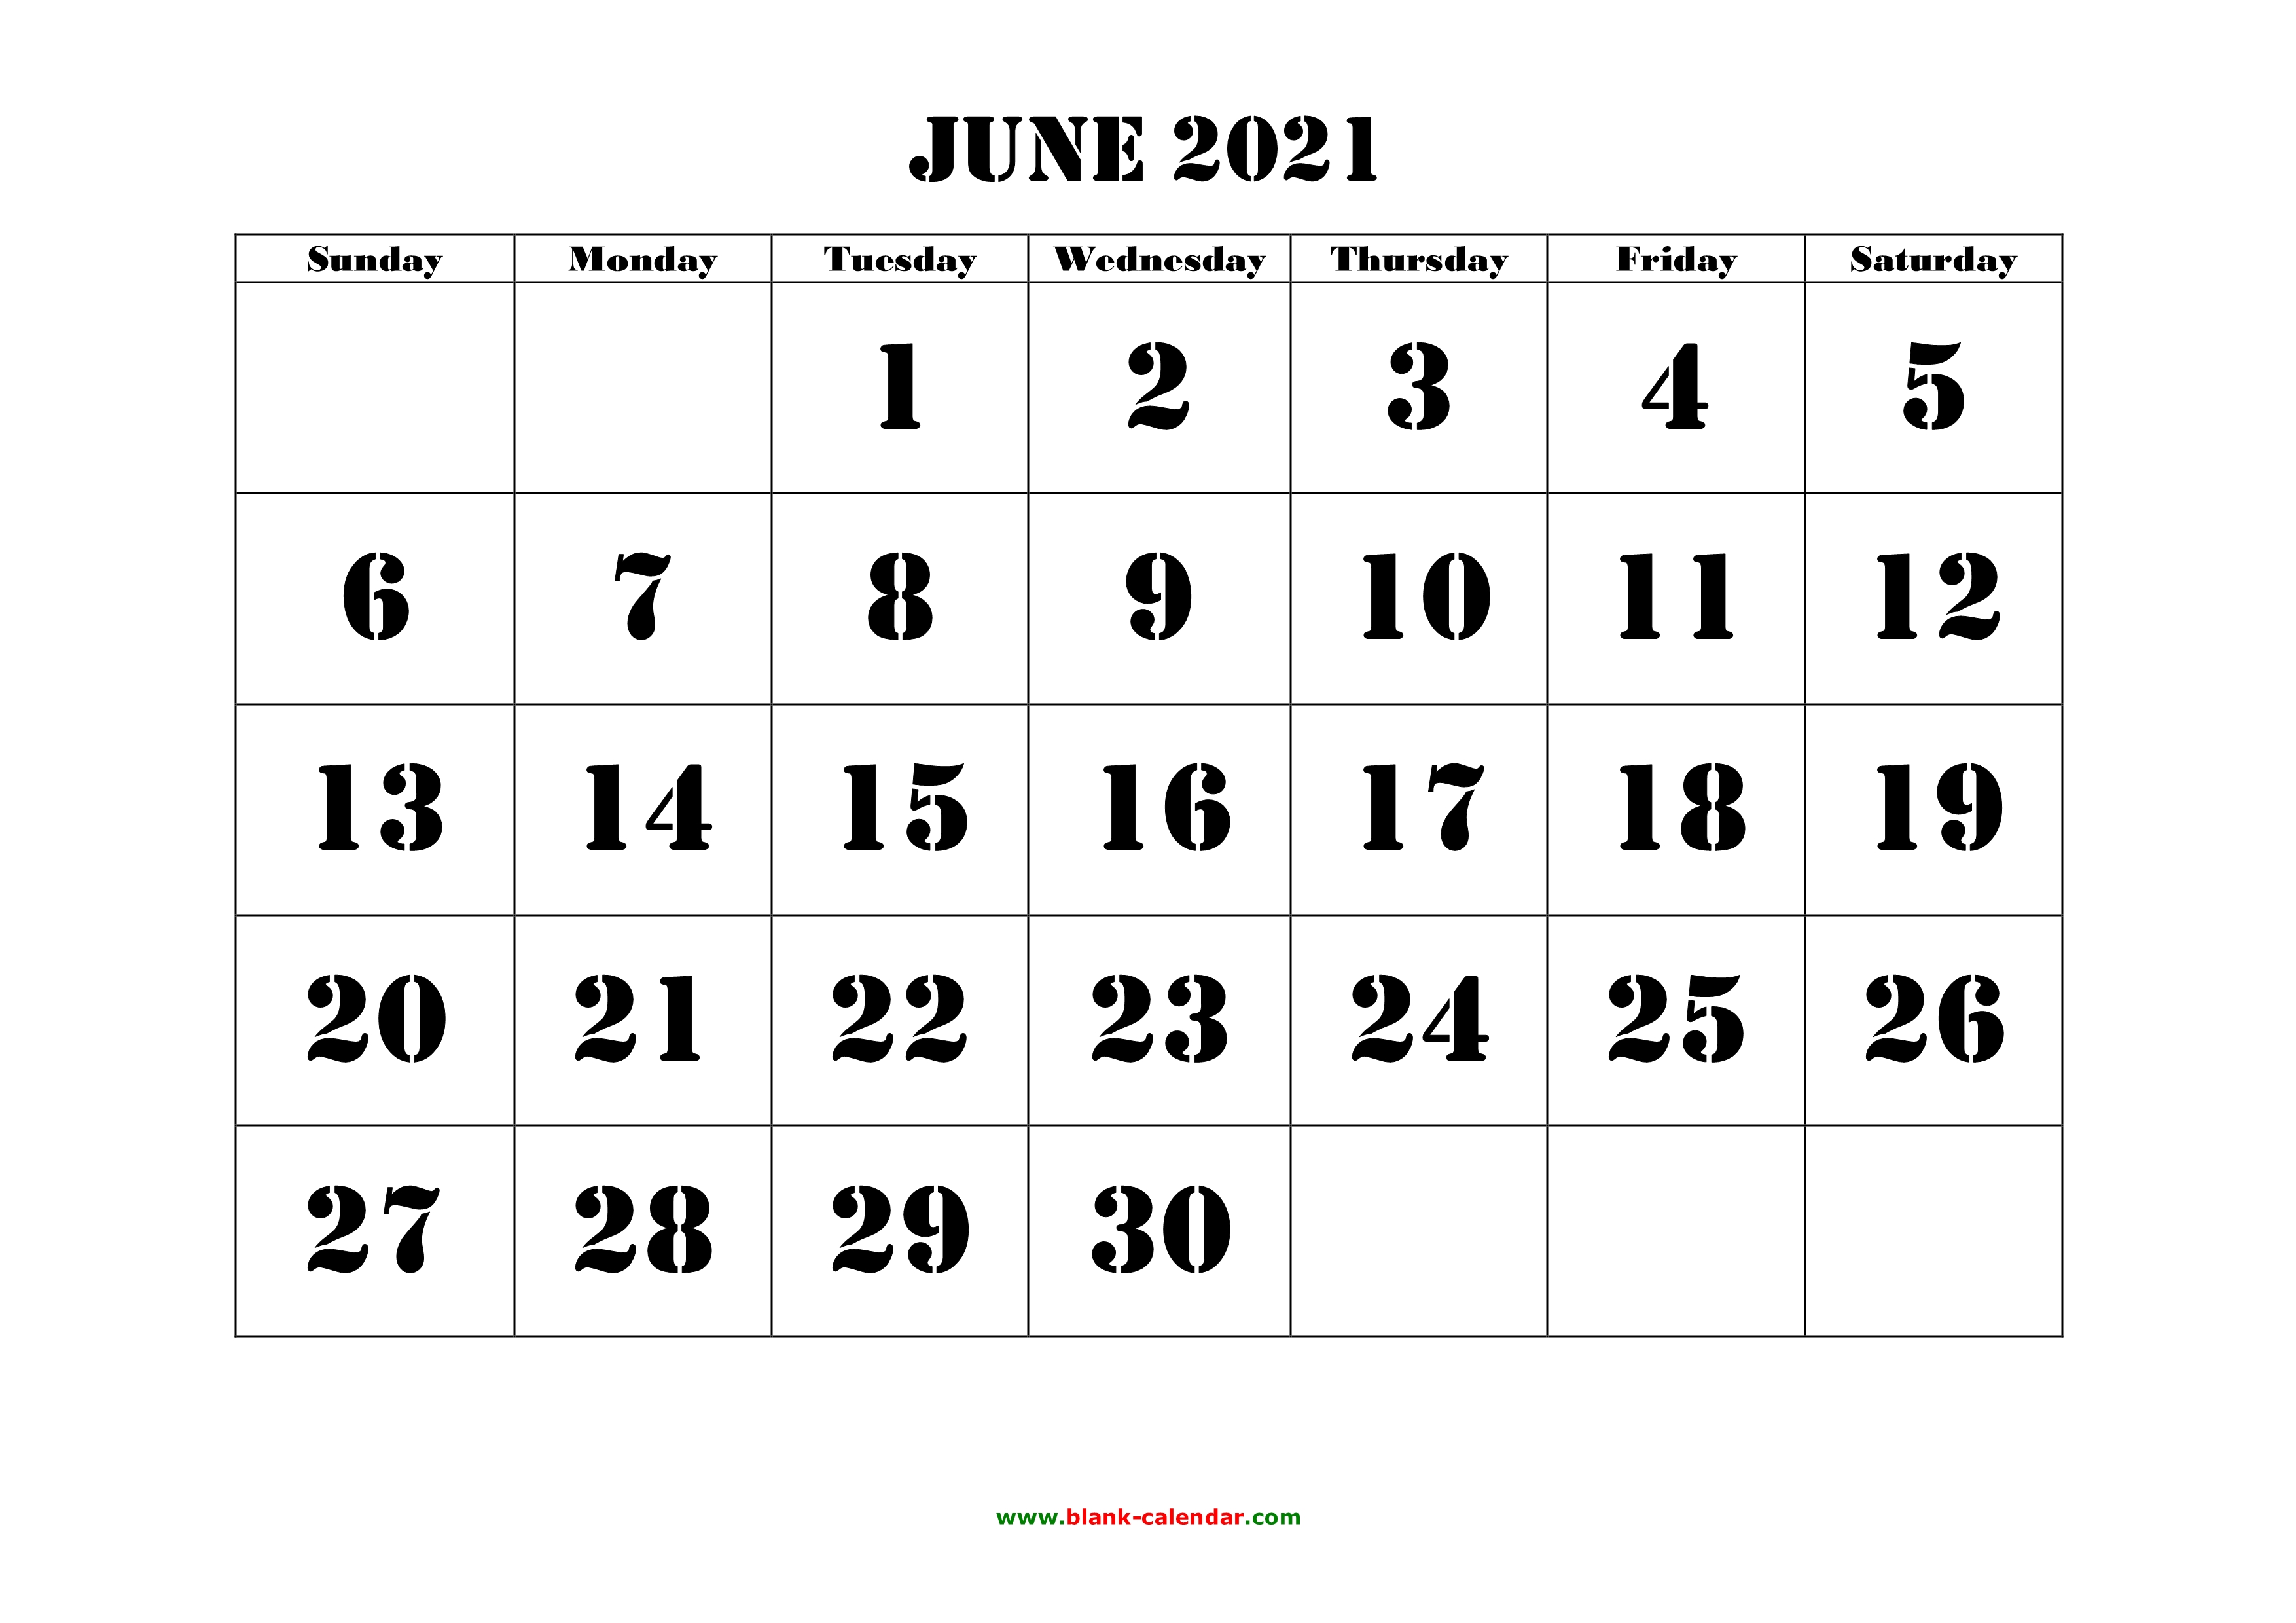 holiday calendar 2021 june Free Download Printable June 2021 Calendar Large Font Design Holidays On Red holiday calendar 2021 june